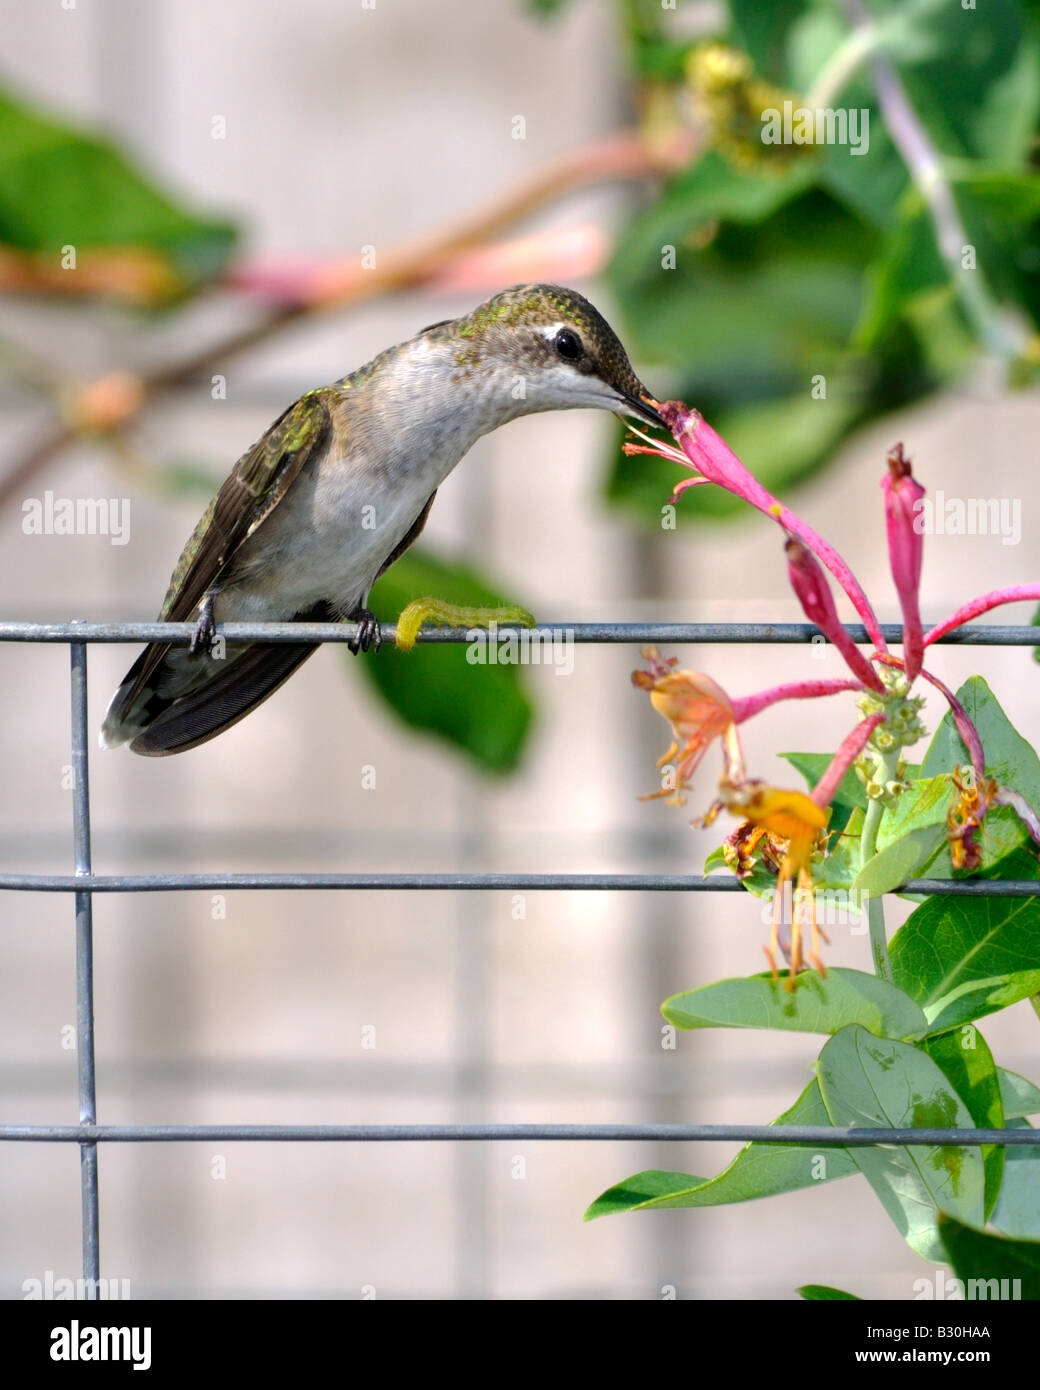 Una hembra Ruby throated Hummingbird Archilochus colubris perchas en un enrejado de alambre y se alimenta de madreselva, Lonicera heckrottii. Oklahoma, Estados Unidos. Foto de stock